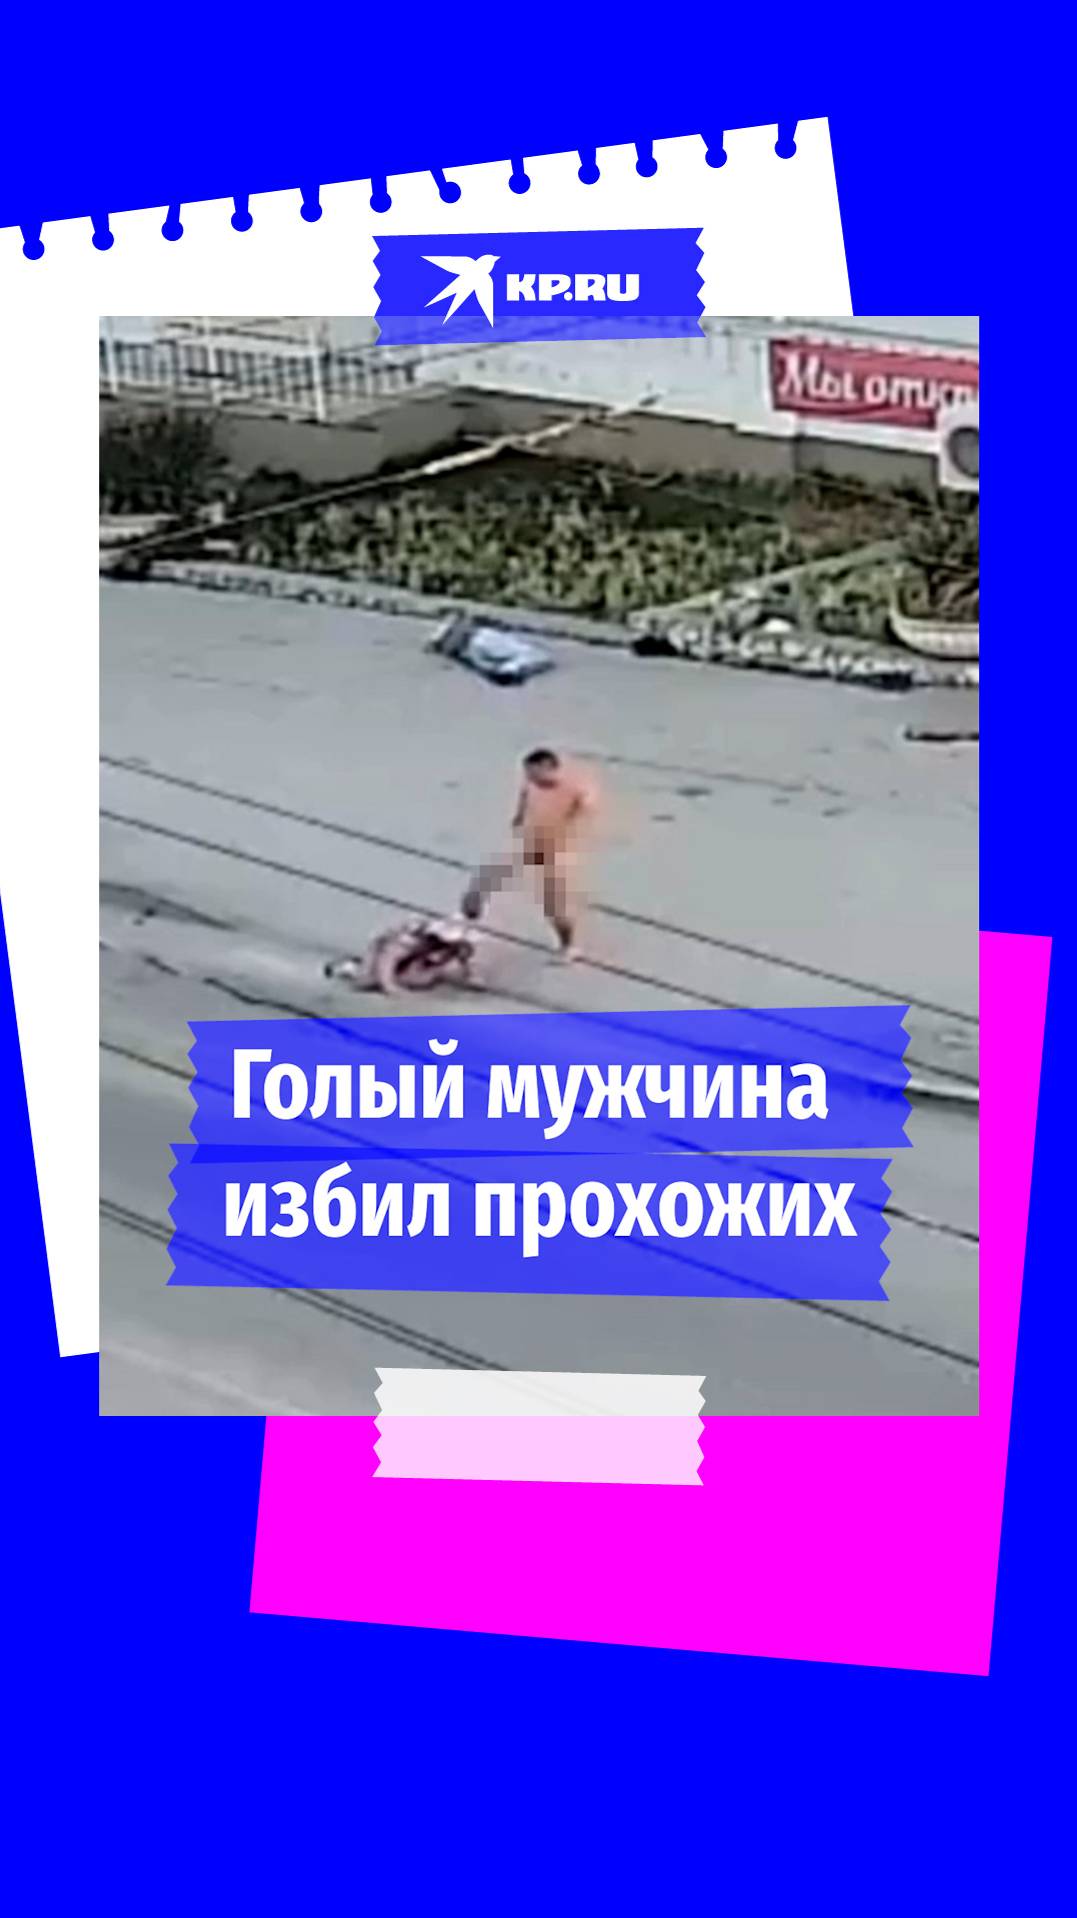 Полиция задержала голого мужчину, который избивал прохожих в Севастополе